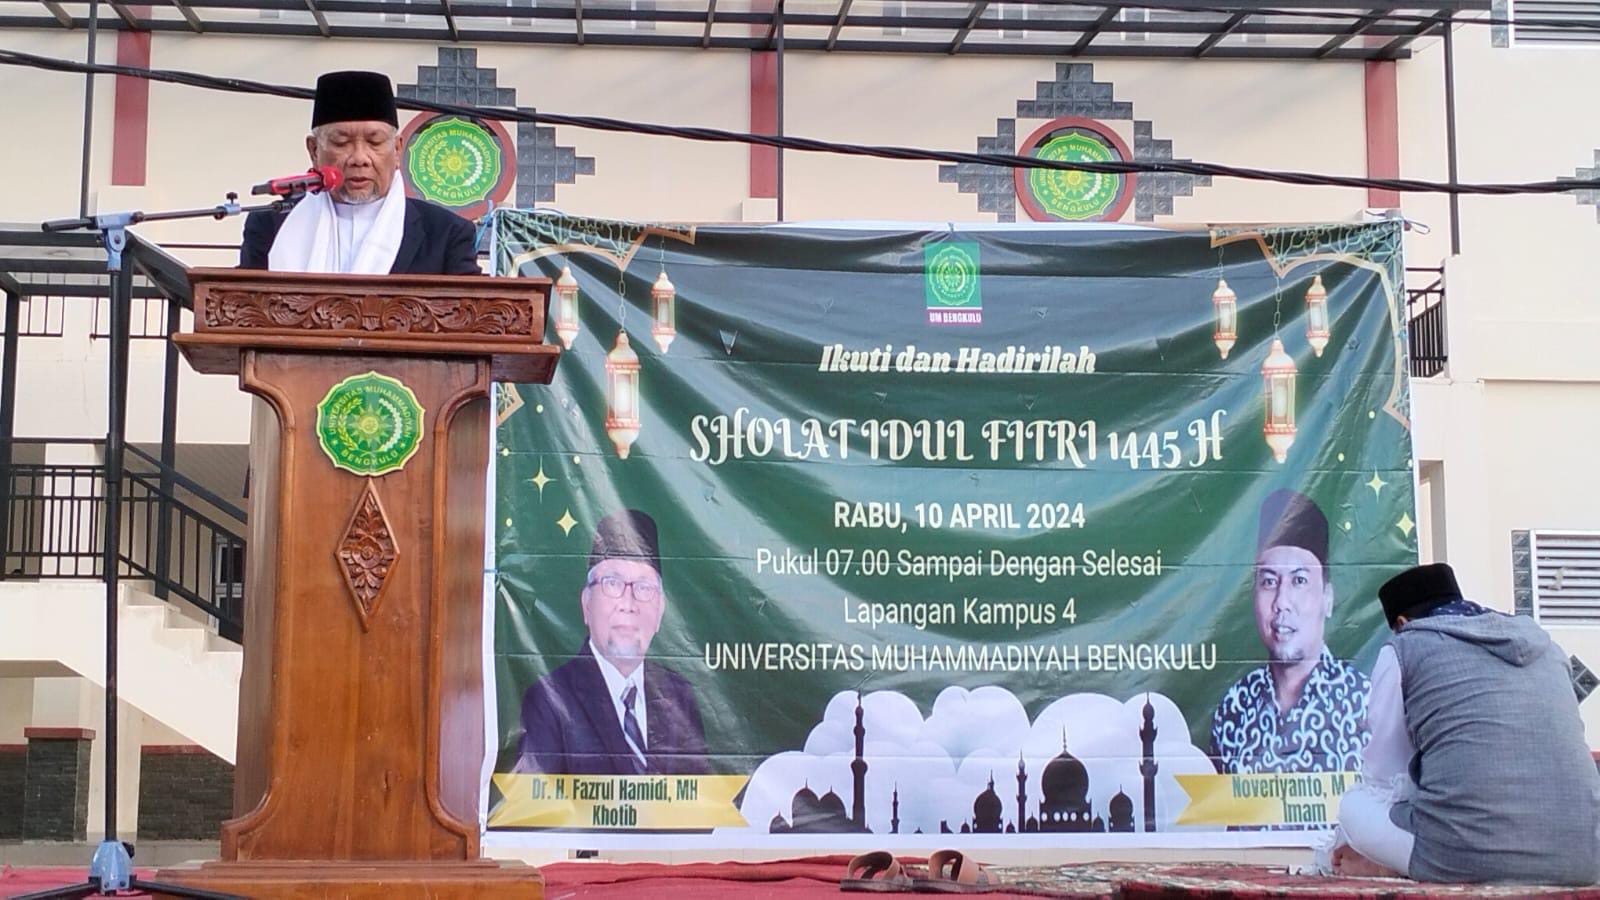 Salat Idulfitri Muhammadiyah dan Pemerintah Dilaksanakan Serentak, Ketua PWM Bengkulu: Harus Disyukuri